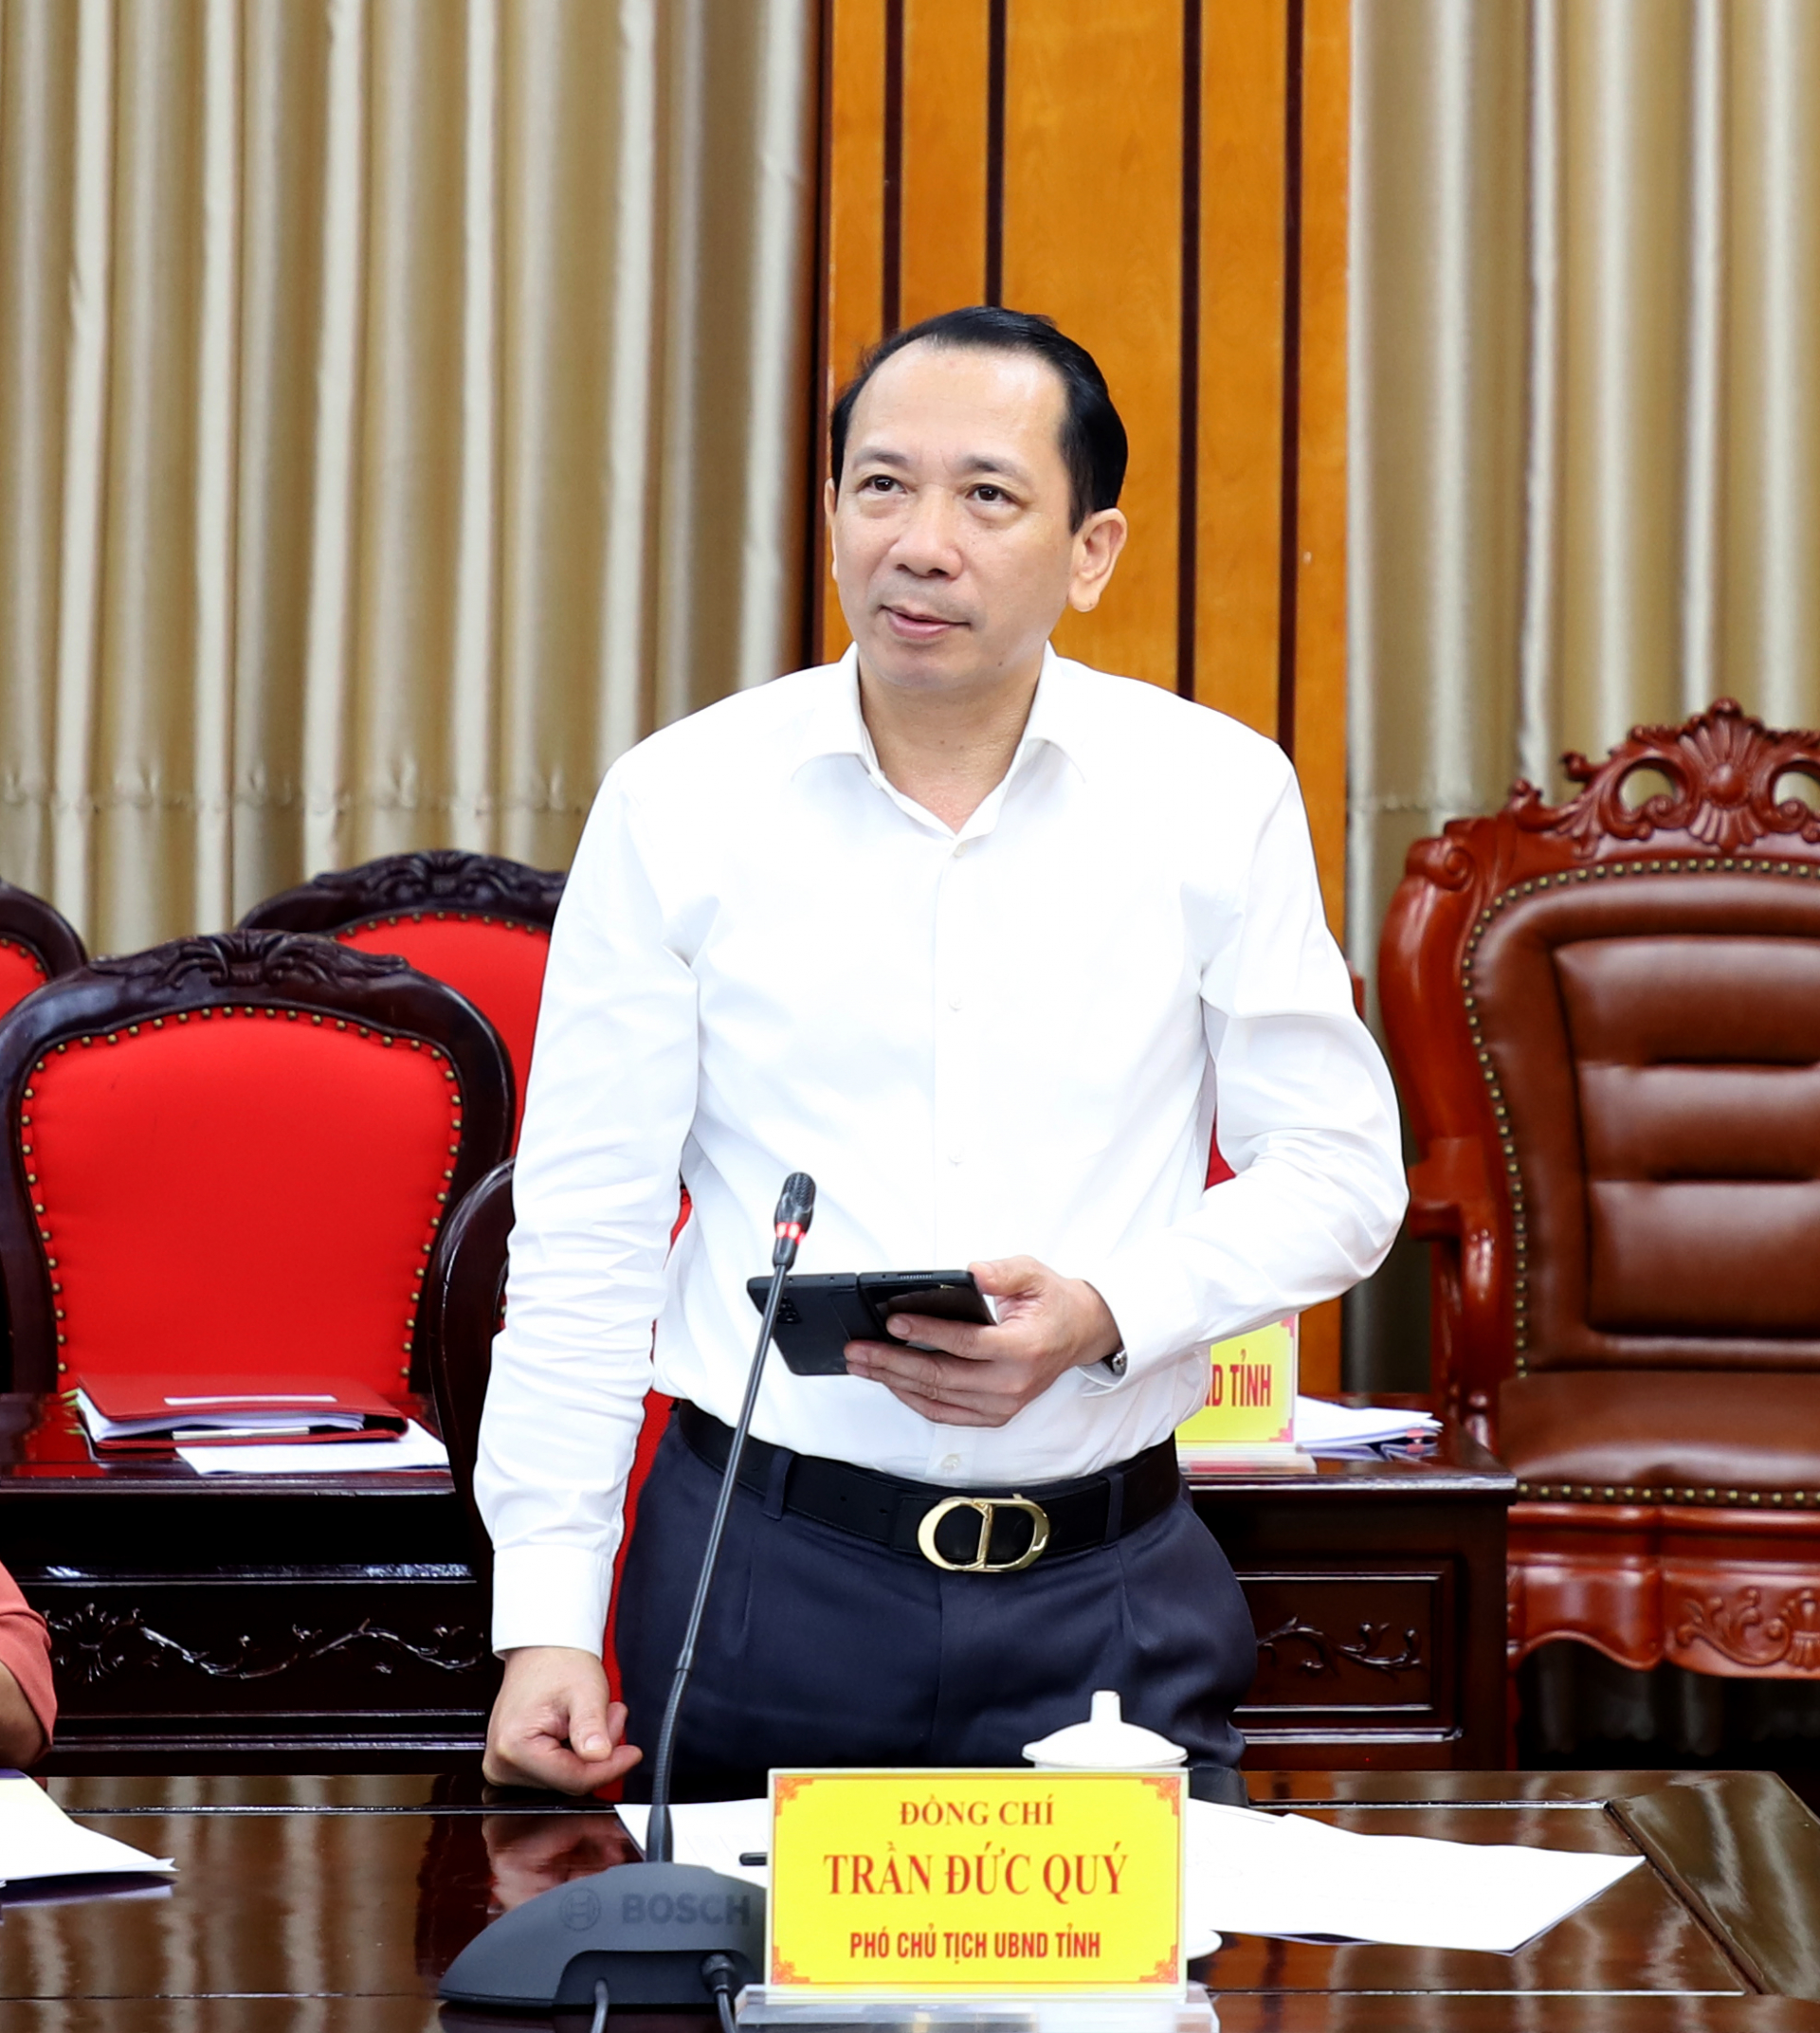 Phó Chủ tịch UBND tỉnh Trần Đức Quý đề nghị các sở, ngành, địa phương cần có giải pháp cụ thể, vận dụng cơ chế linh hoạt và đảm bảo mục tiêu trong giải ngân kế hoạch vốn đầu tư công.